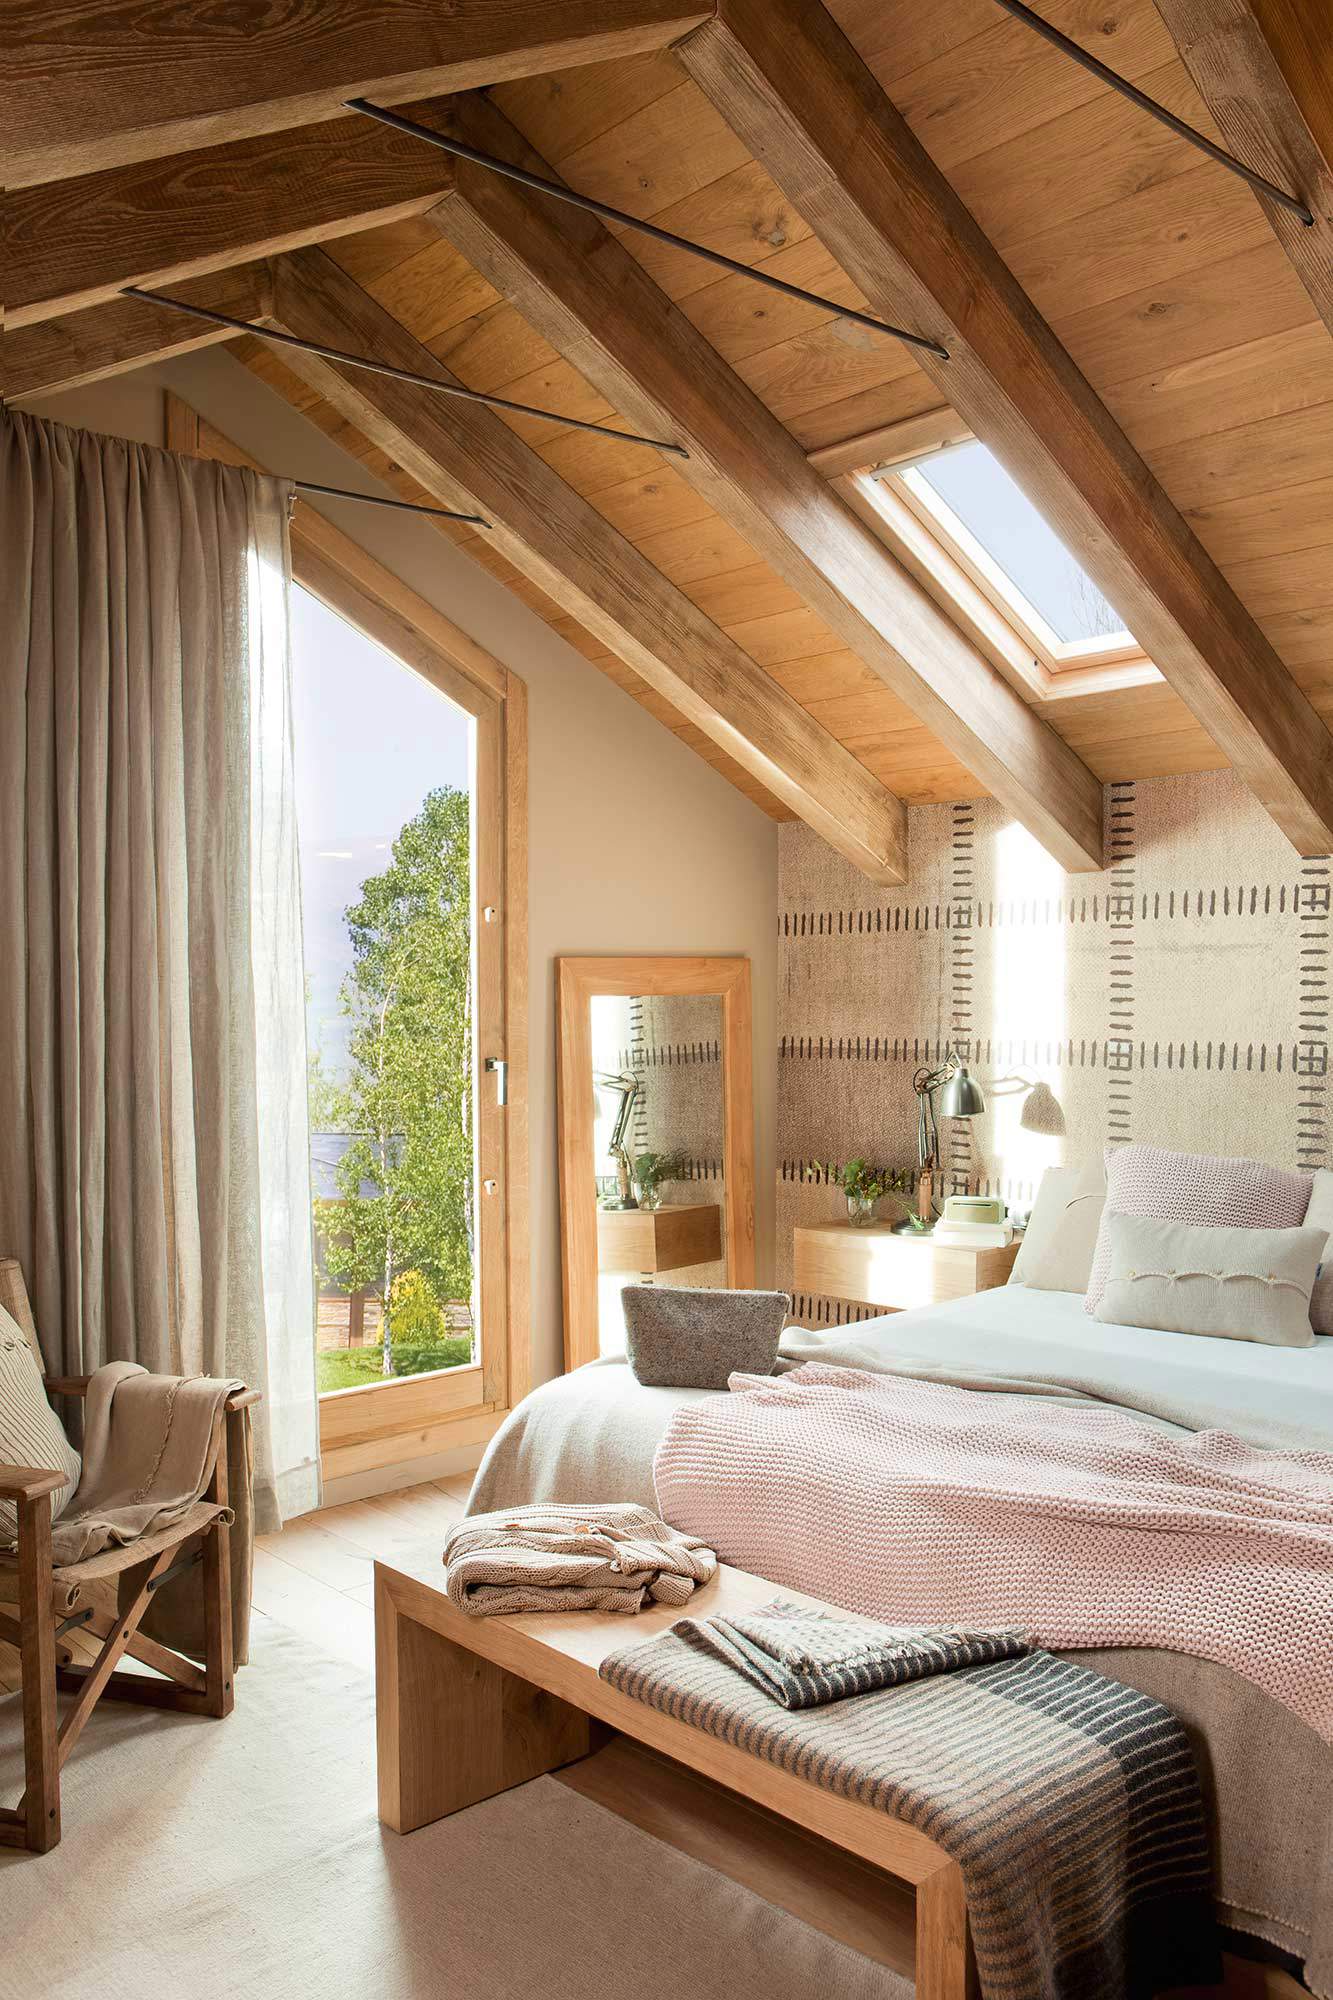 Dormitorio rústico con techo abuhardillado de madera y vigas